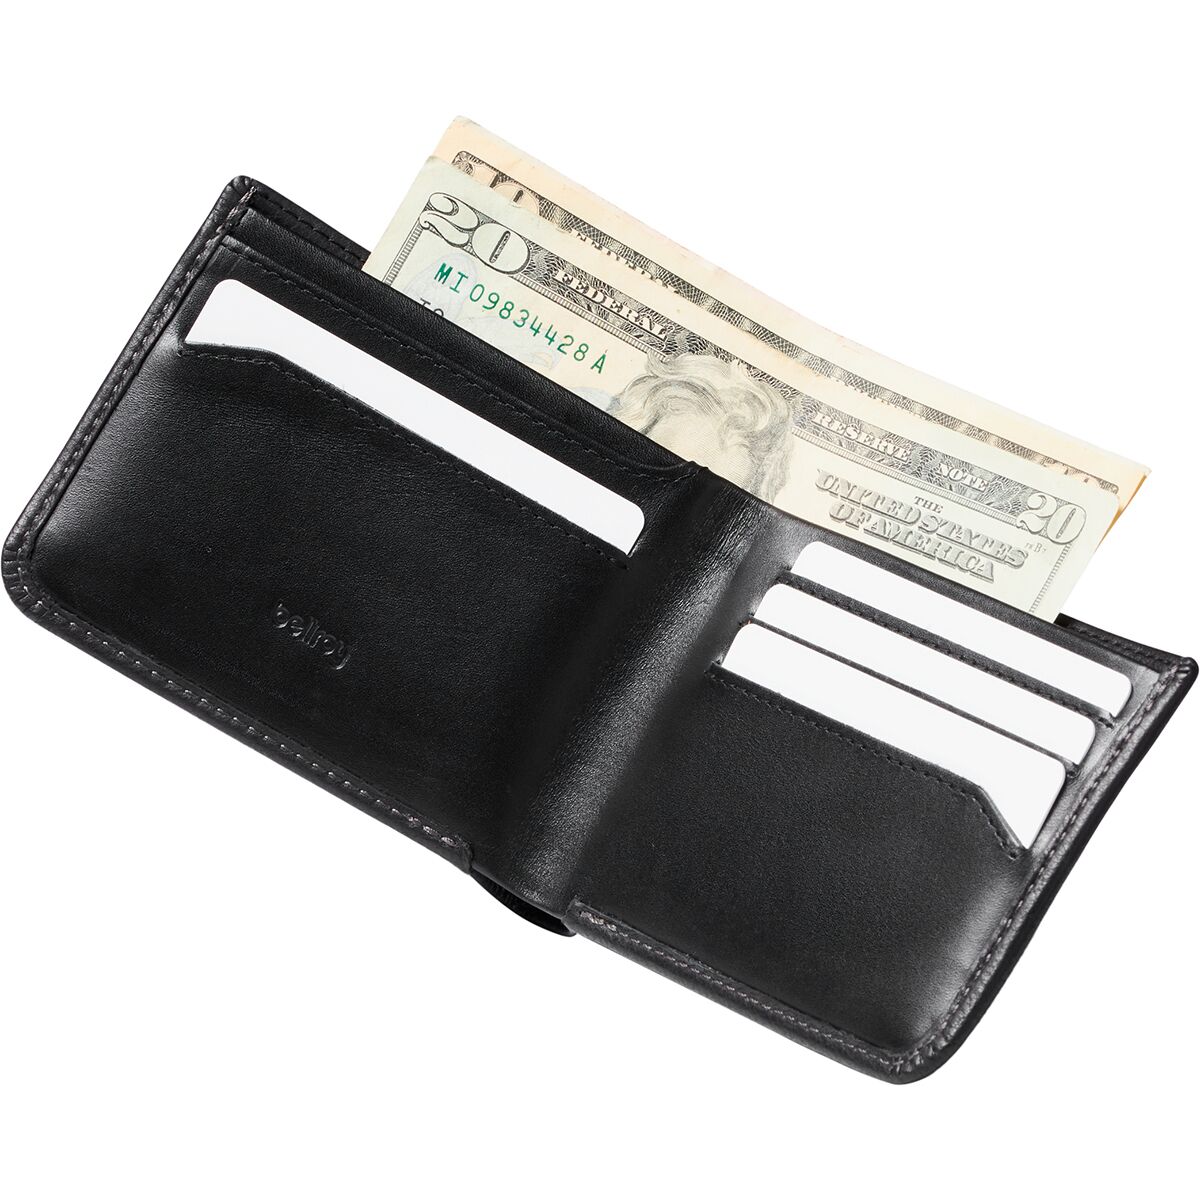 Basalt Hide & Seek Bi-Fold Wallet